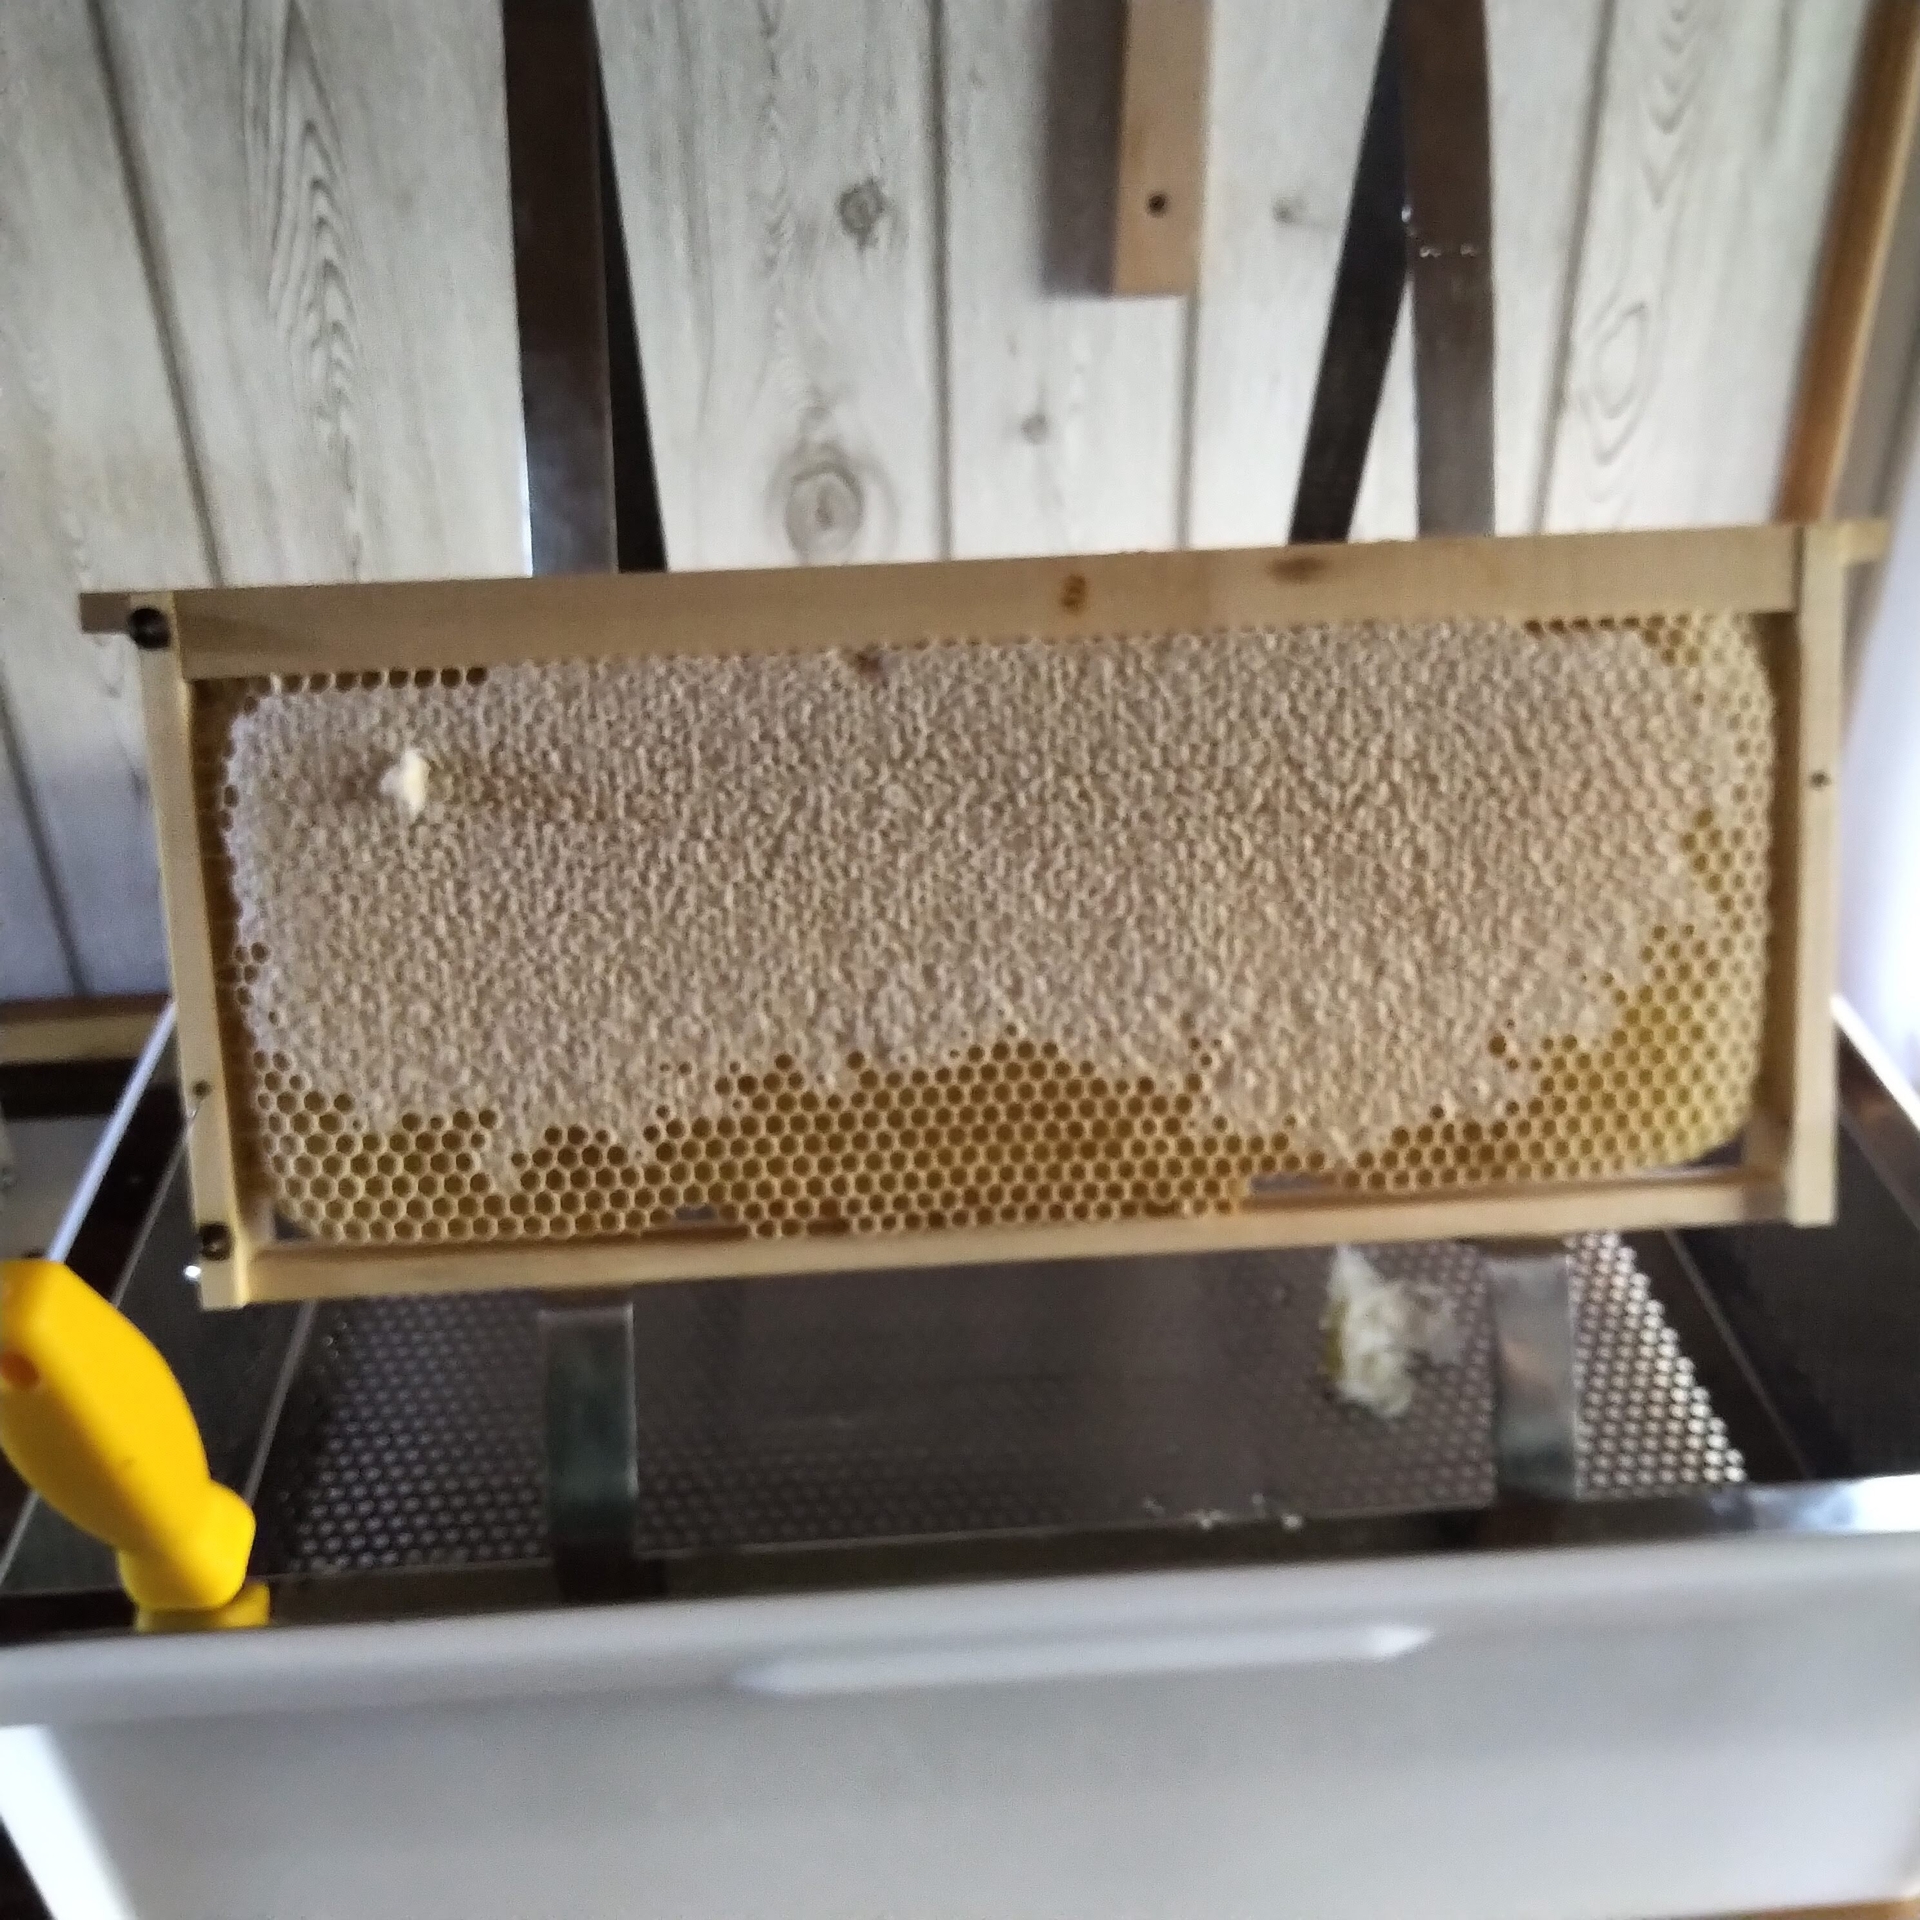 Bild: Foto: Die verdeckelte Honigwabe ist reif für die Ernte. Foto: Anett Zeidler